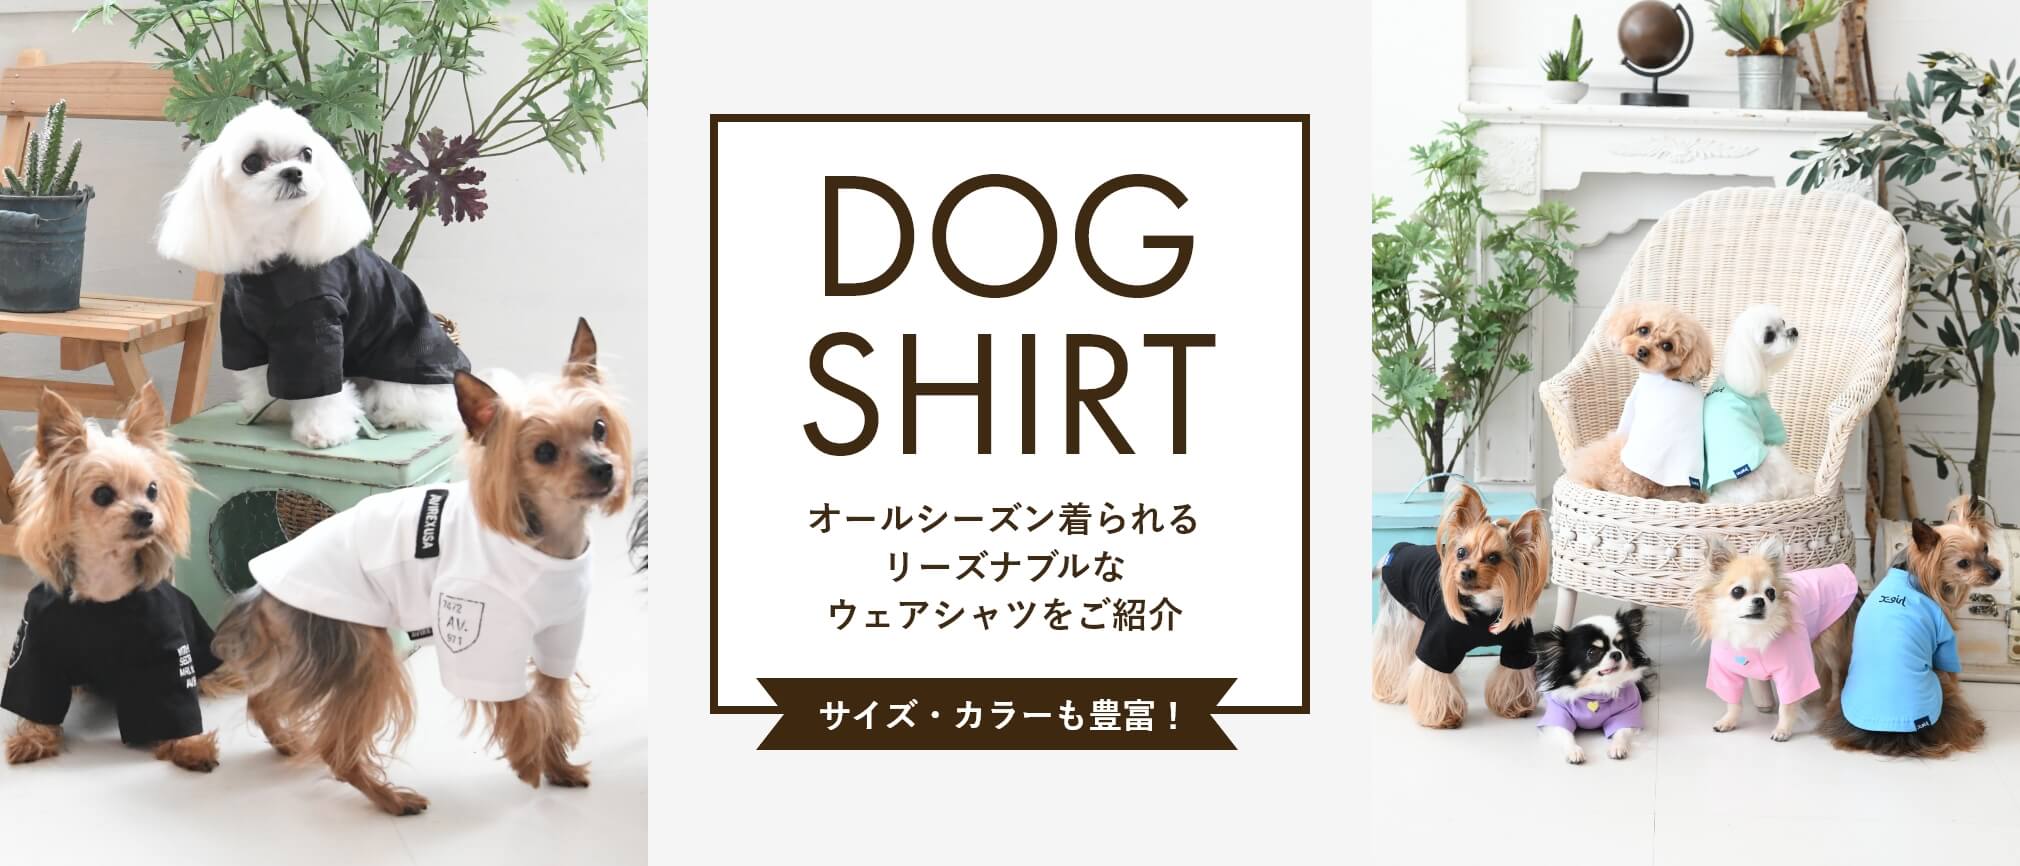 犬服・ドッグウェアブランド専門店「Calulu(カルル)」公式ペット用品通販サイト